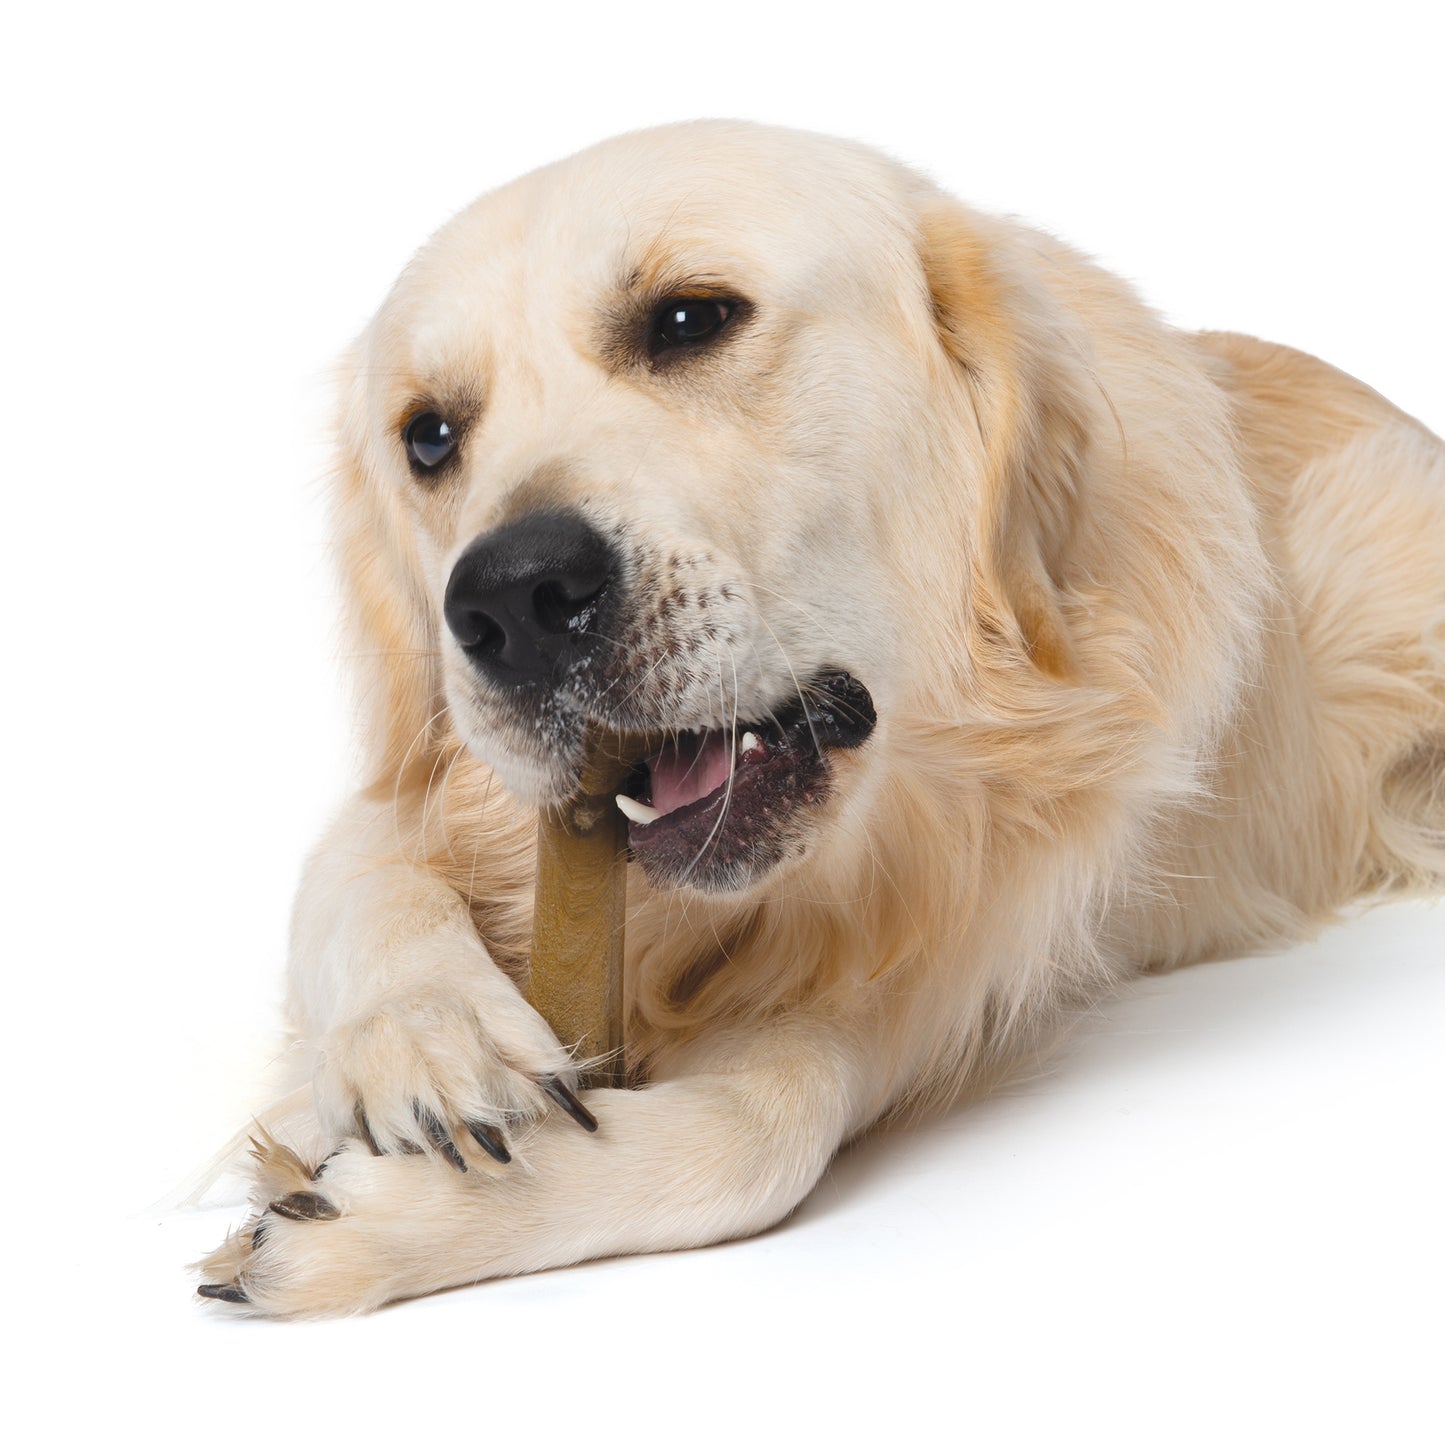 Nosh Flexible Chew Bone For Puppies Chicken  Nylon  | PetMax Canada